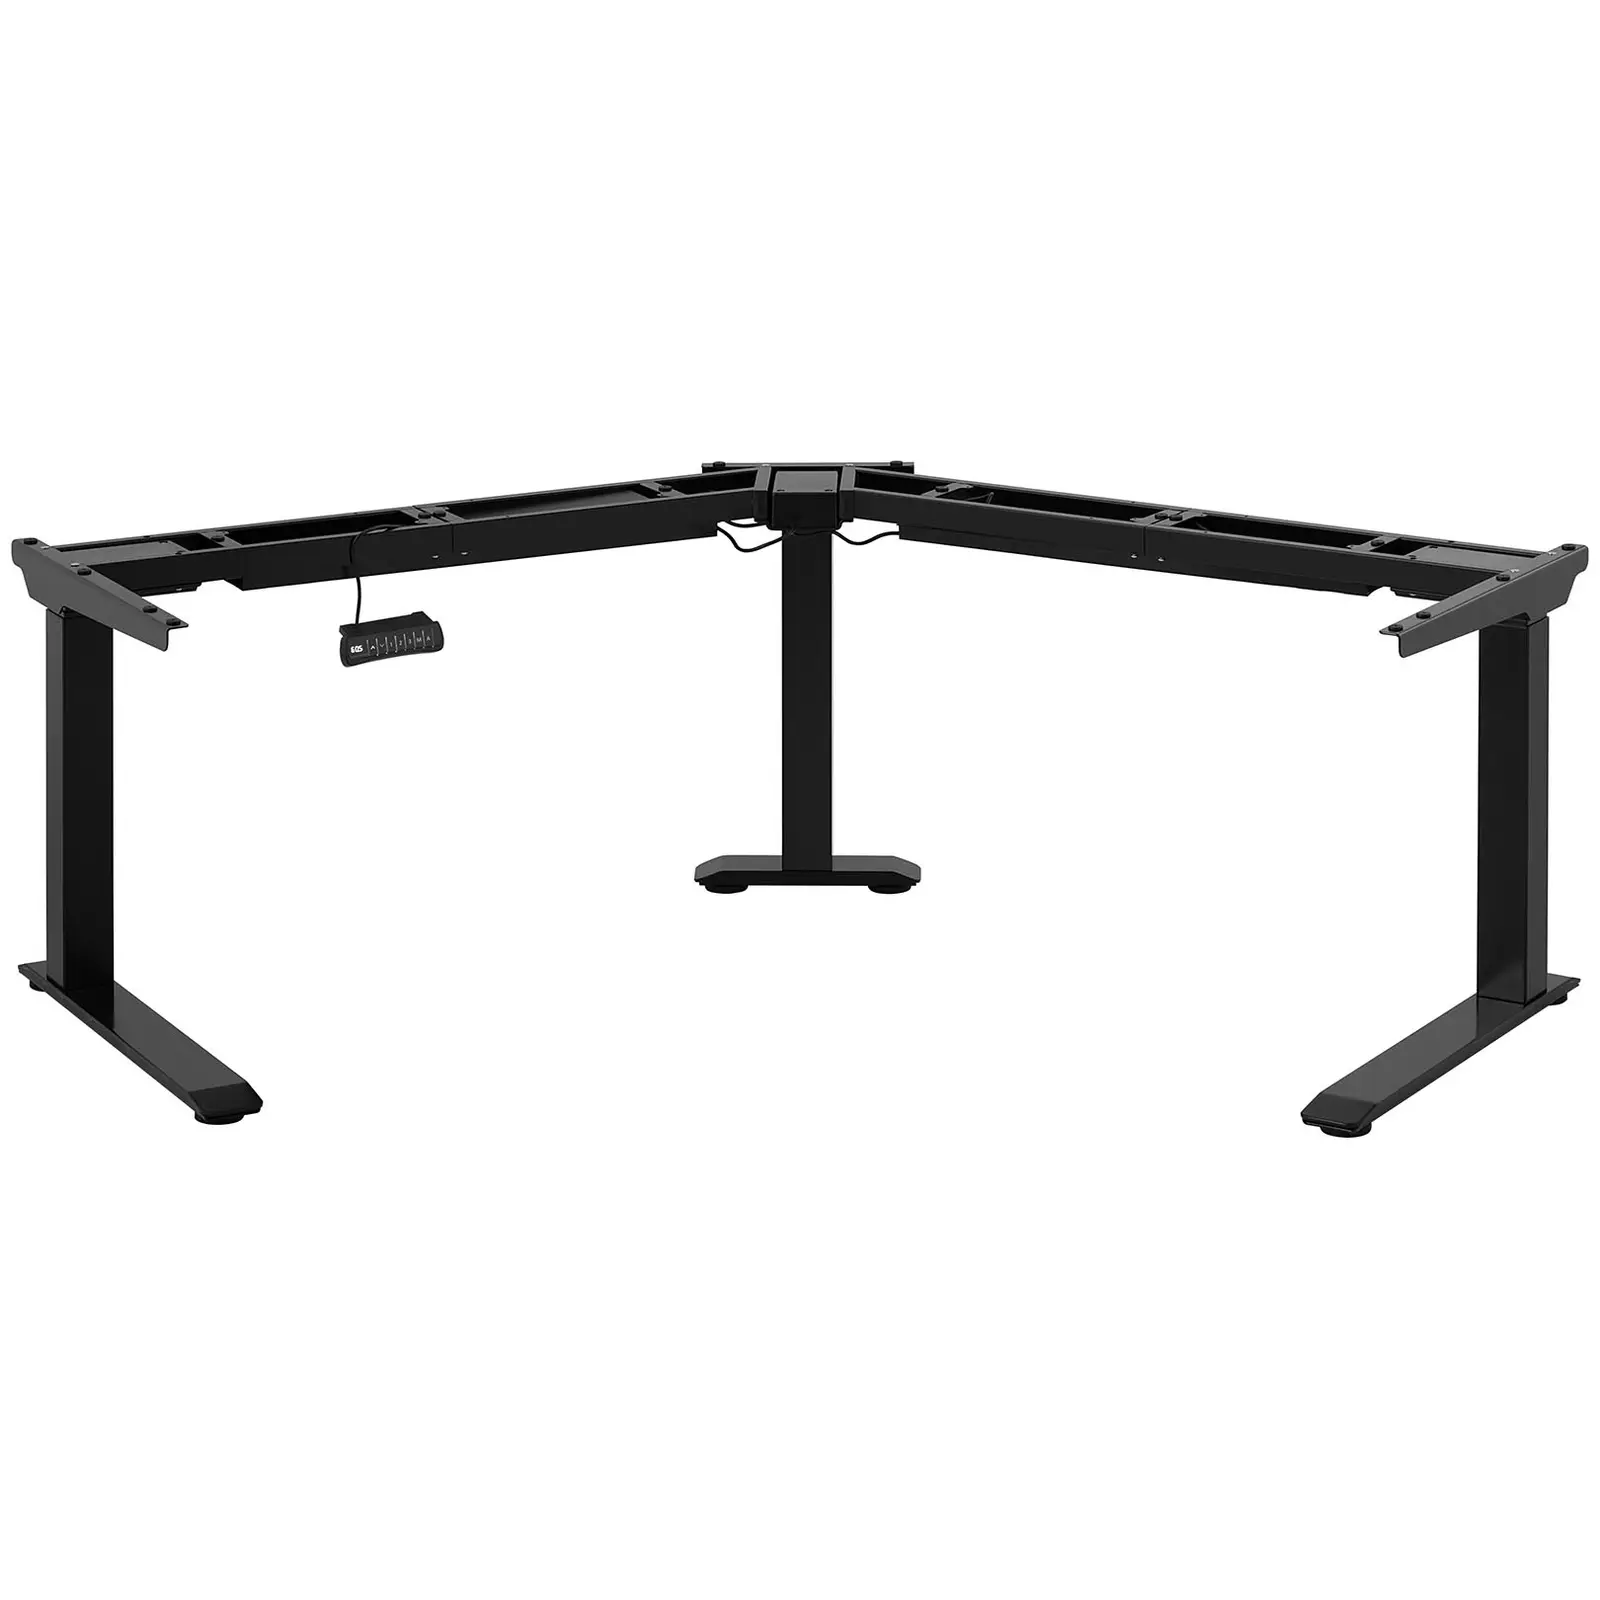 Bastidor para mesa de esquina con ajuste de altura - altura: 60-125 cm - ancho derecha/izquierda: 116-186 cm - ángulo 120° - 150 kg